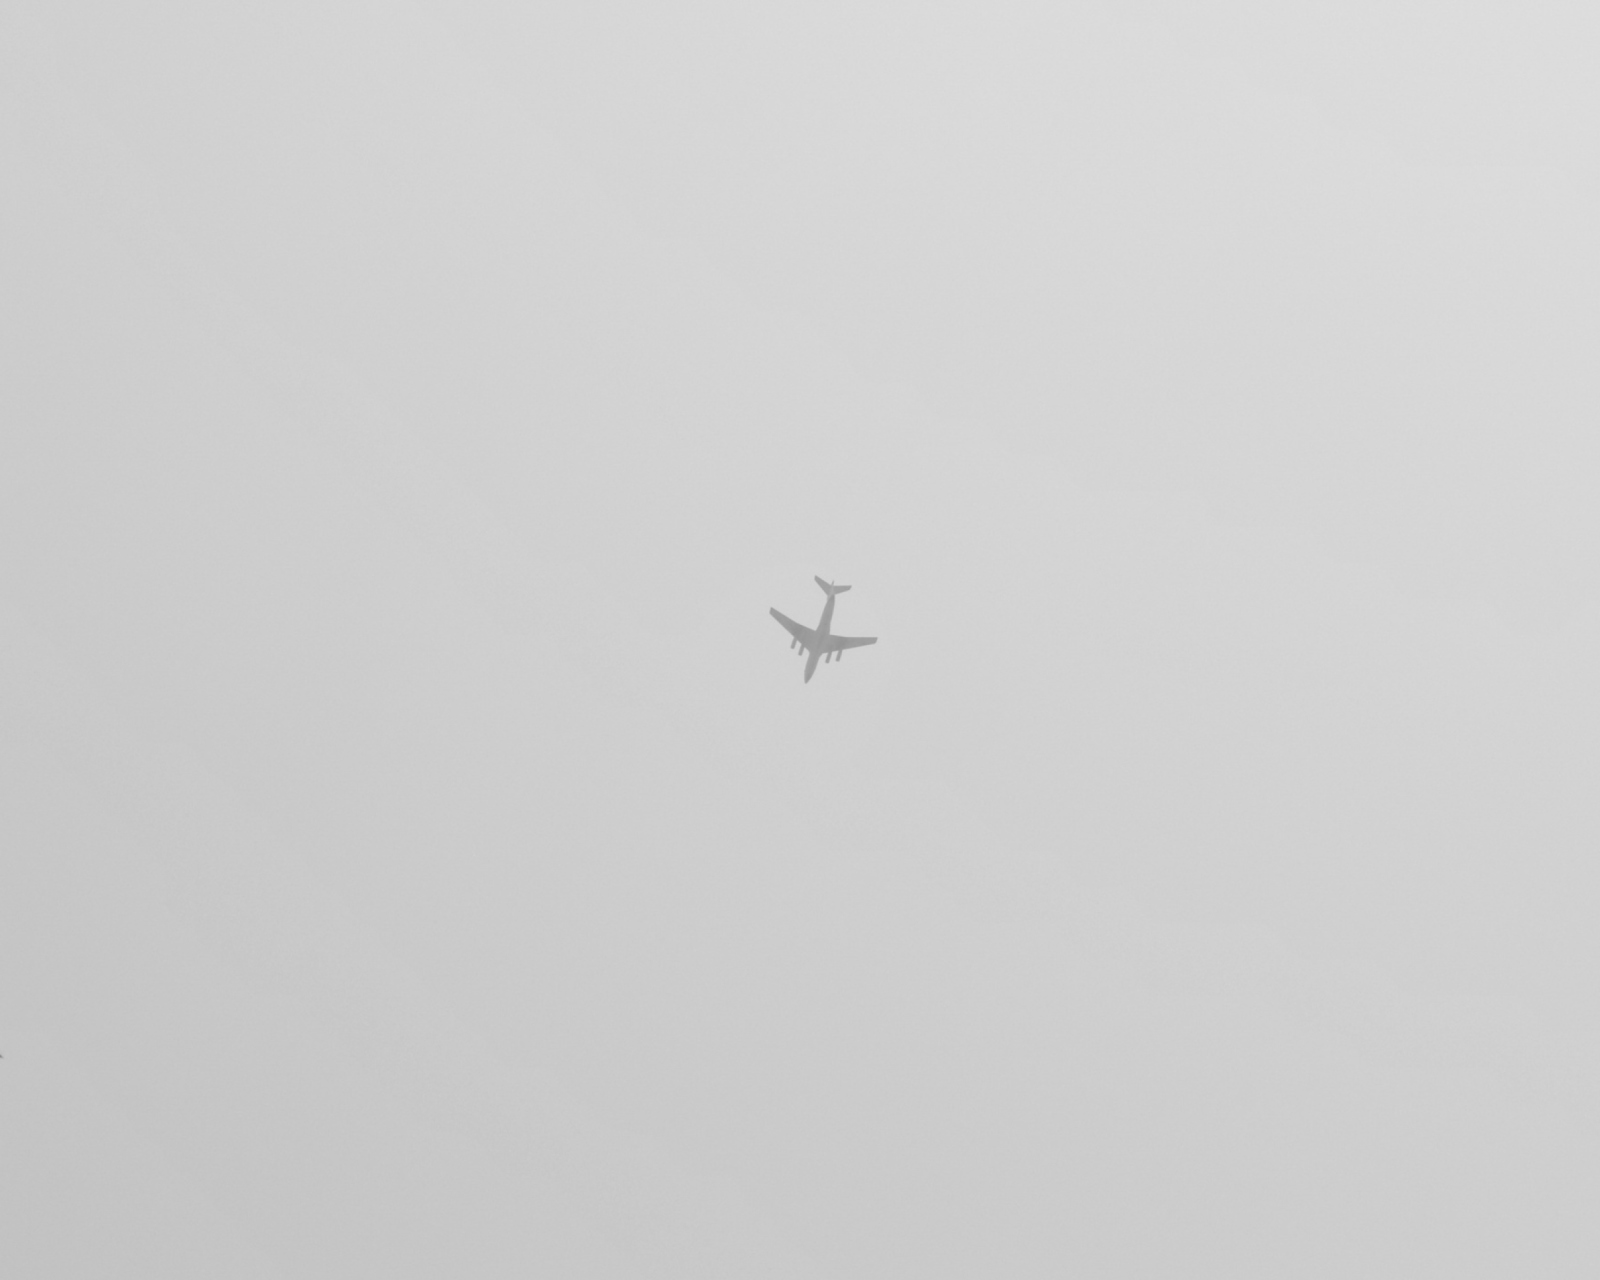 Airplane High In The Sky screenshot #1 1600x1280